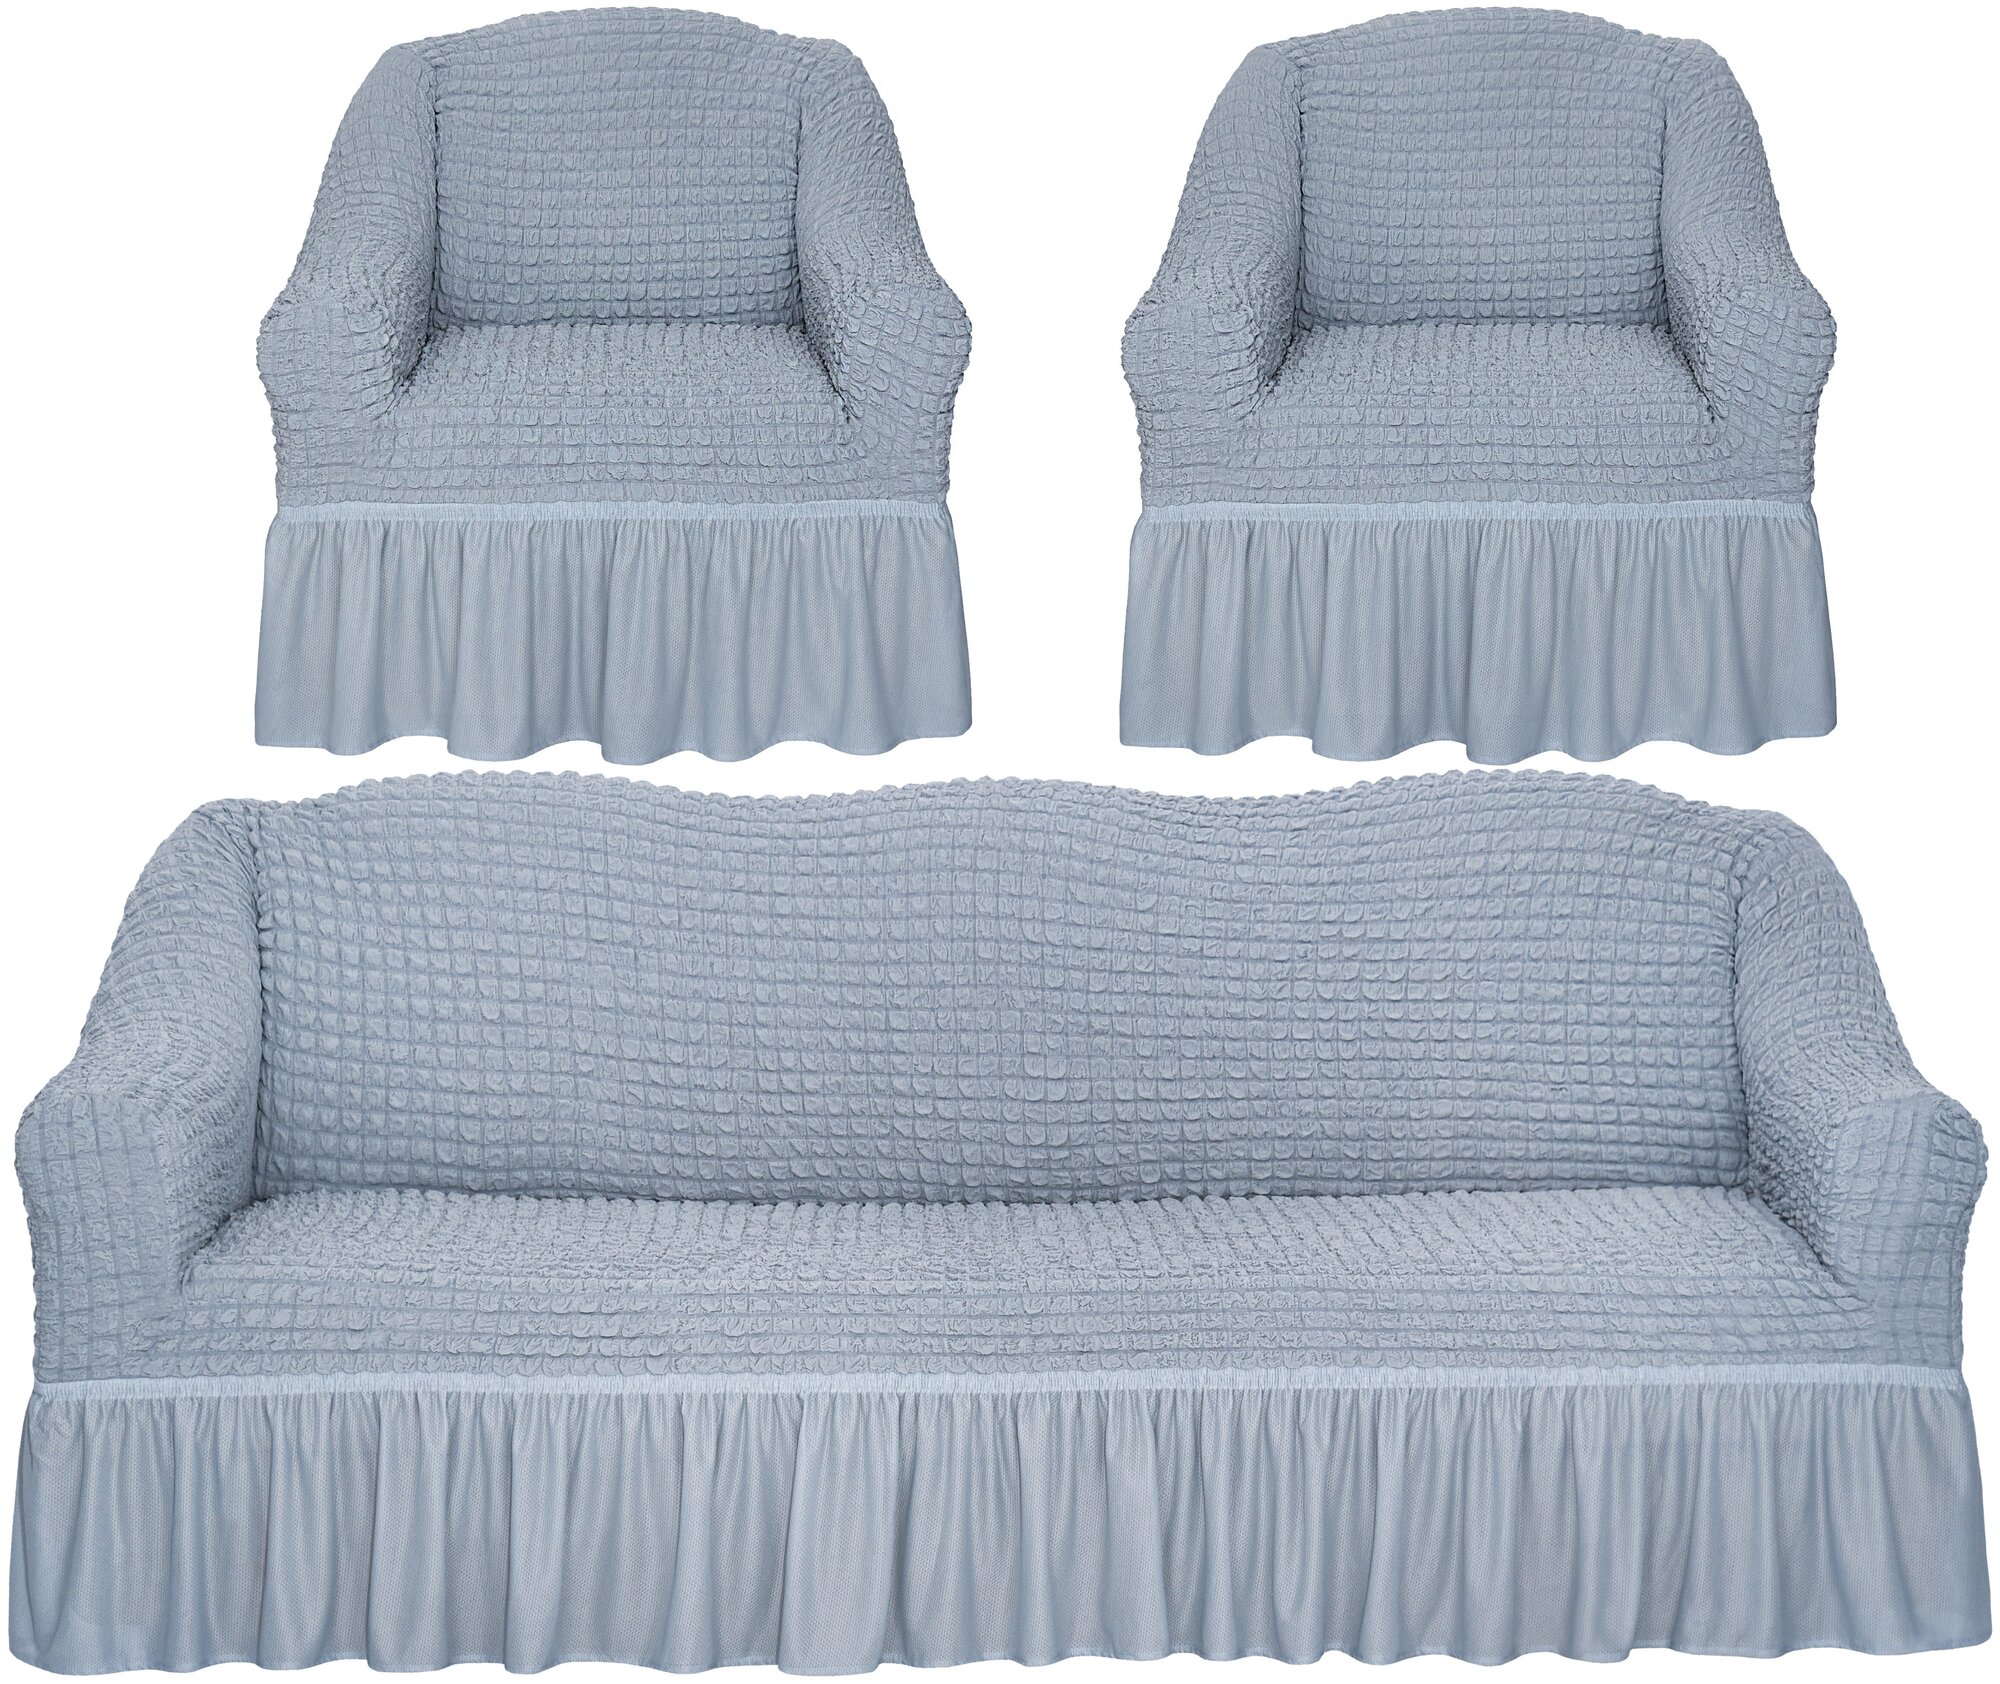 Чехлы на диван и 2 кресла с оборкой универсальные, цвет Серый